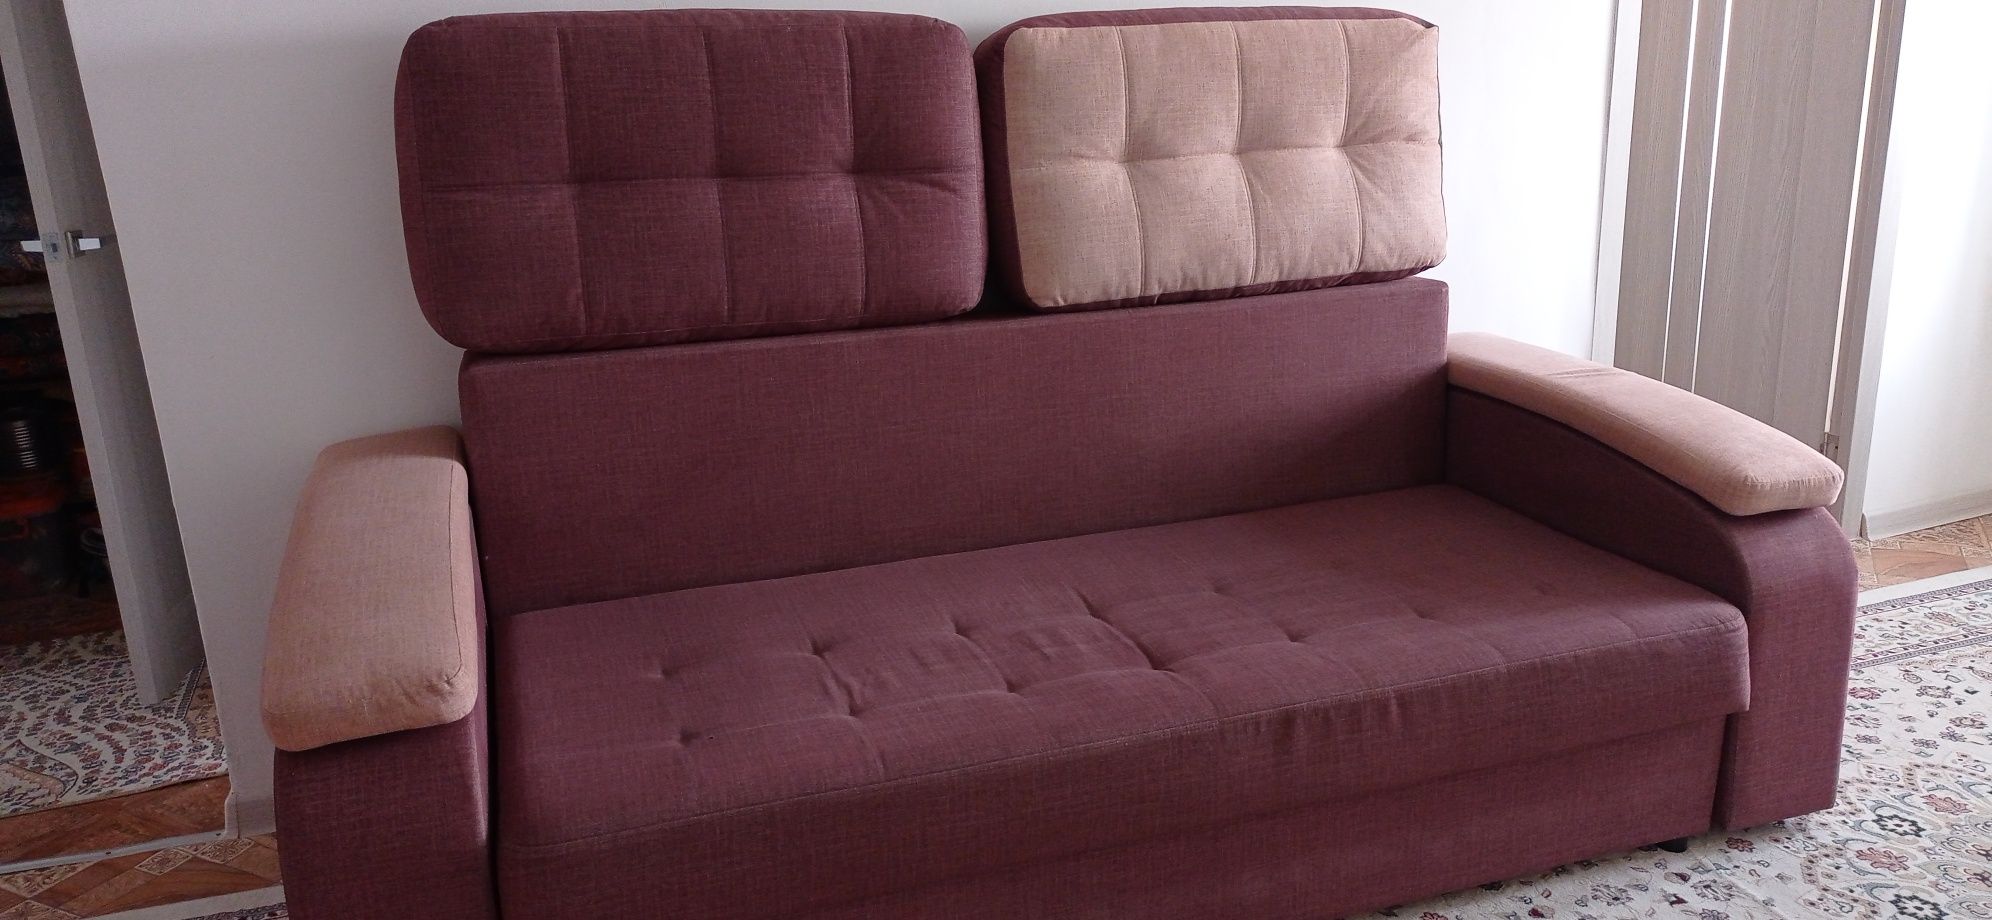 Мягкий уголок , диван в отличном состоянии